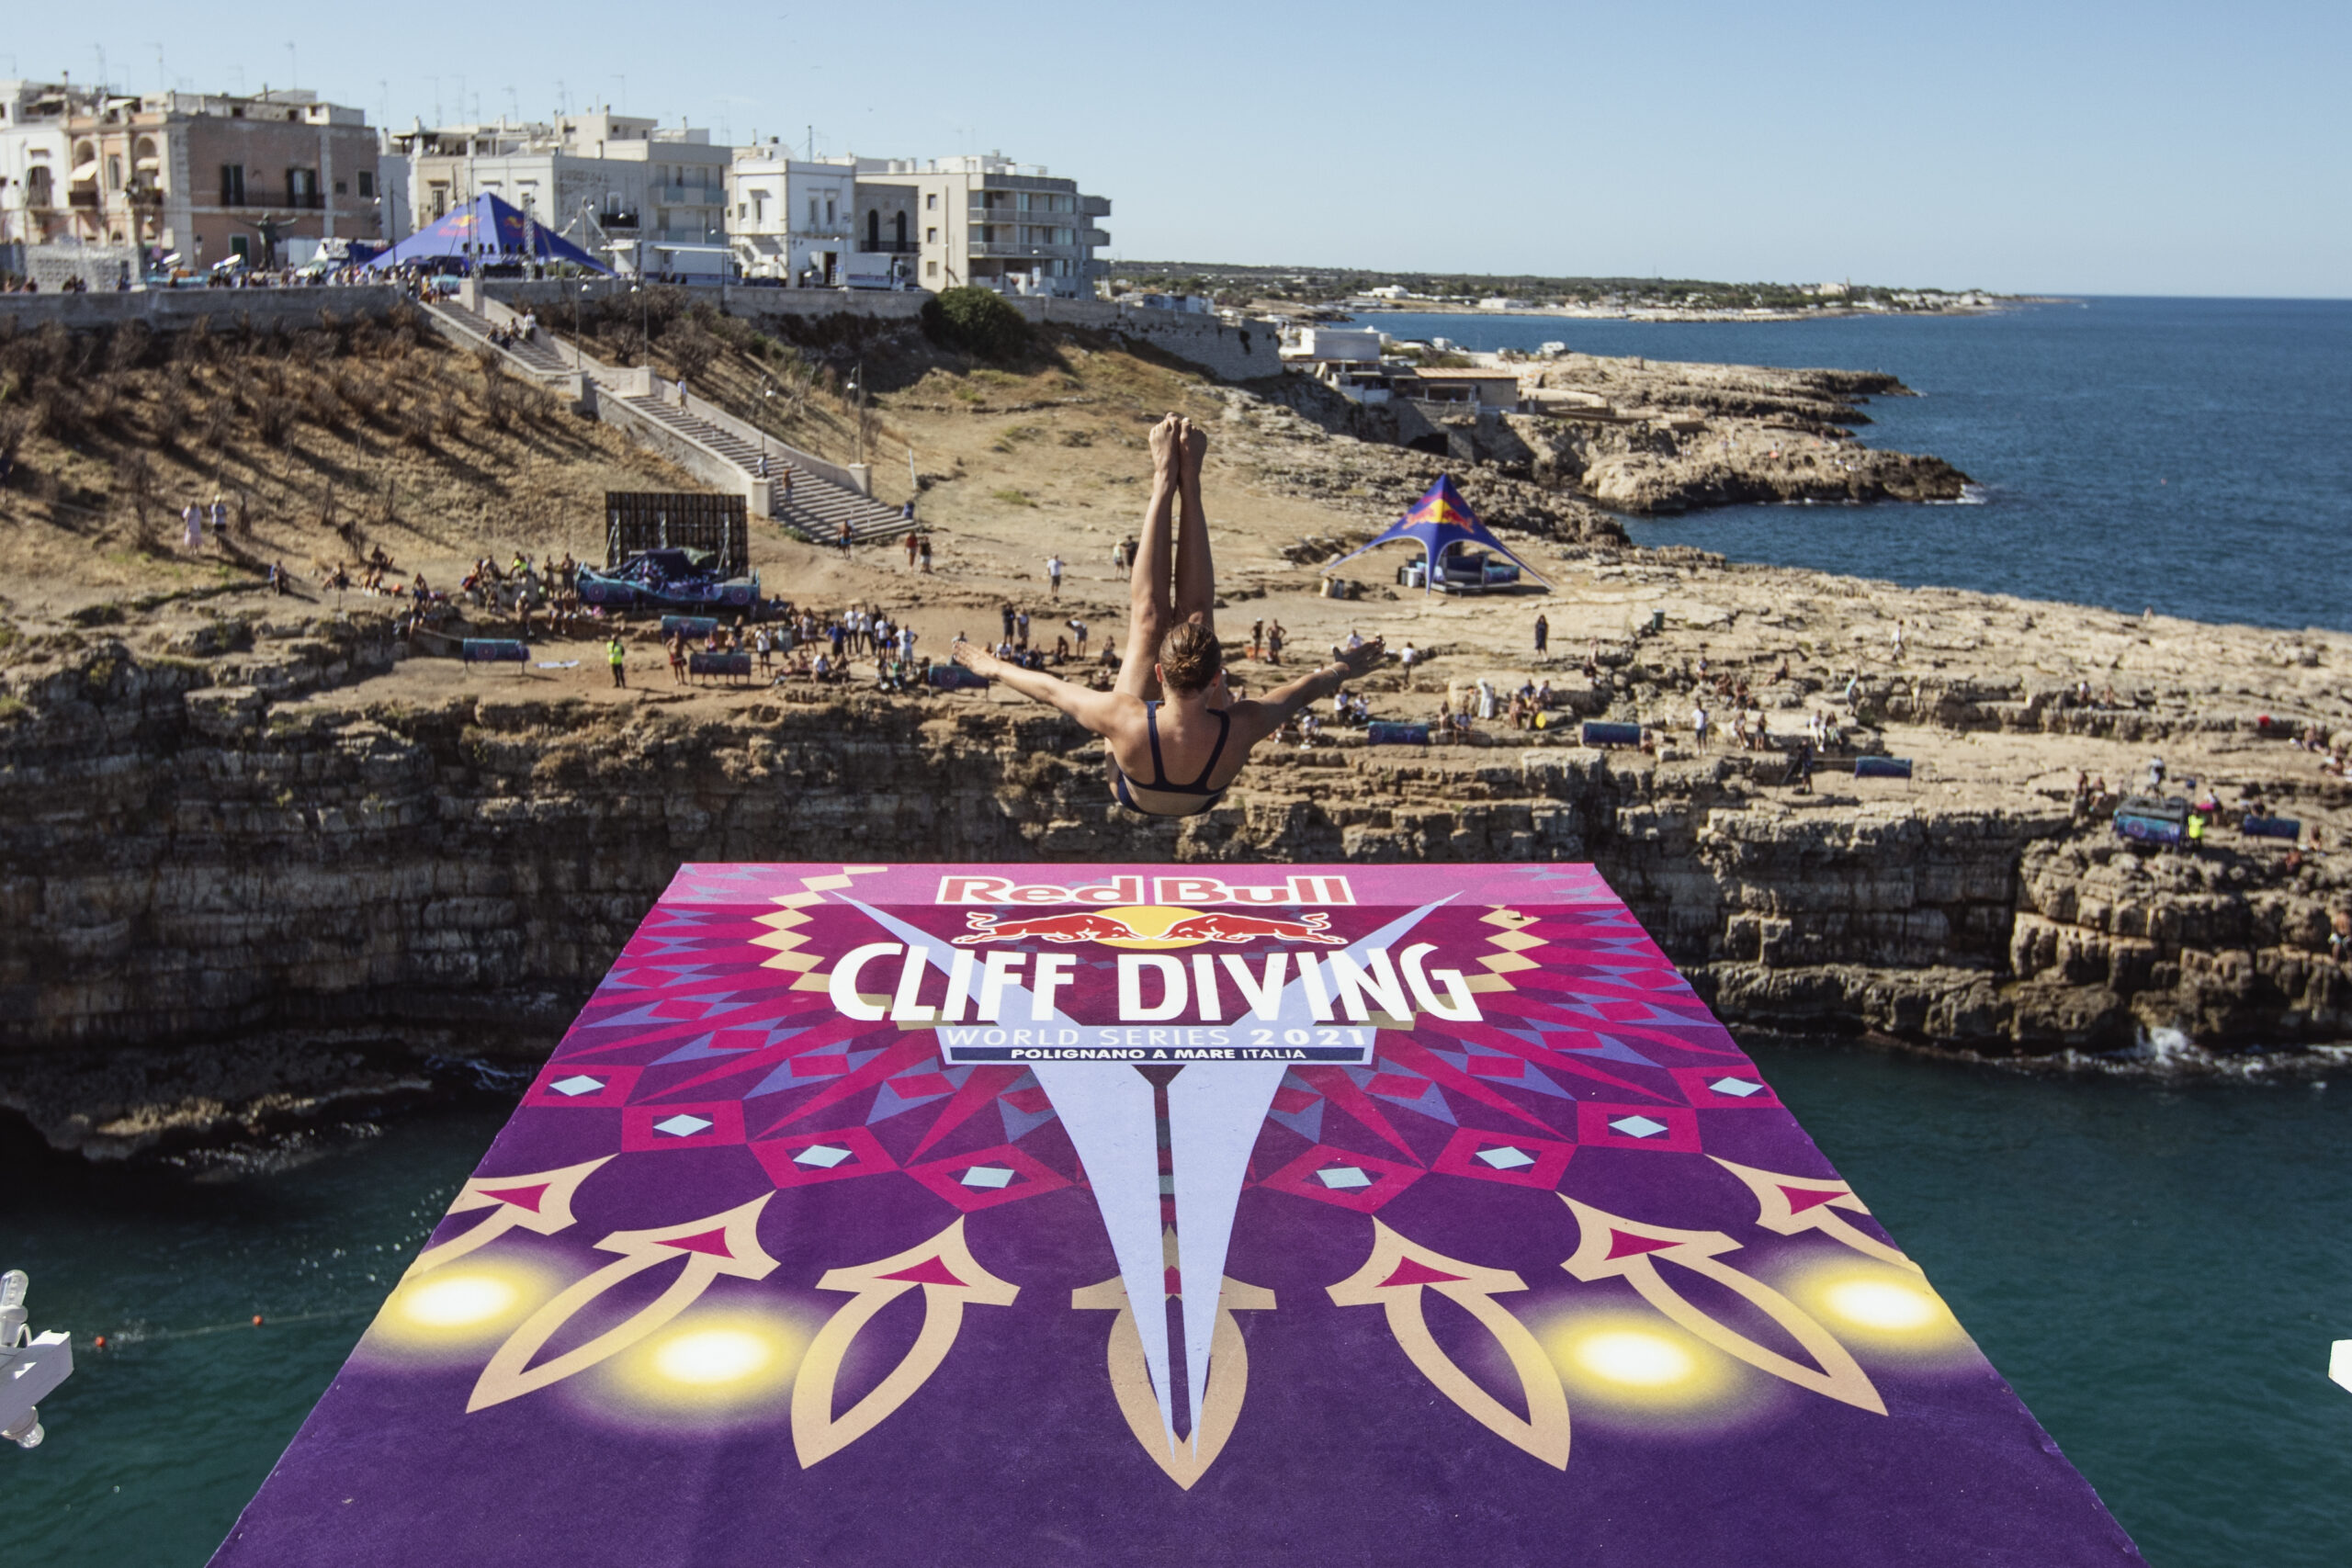 La Red Bull Cliff Diving World Series torna a Polignano a Mare dal 28 al 30 Giugno